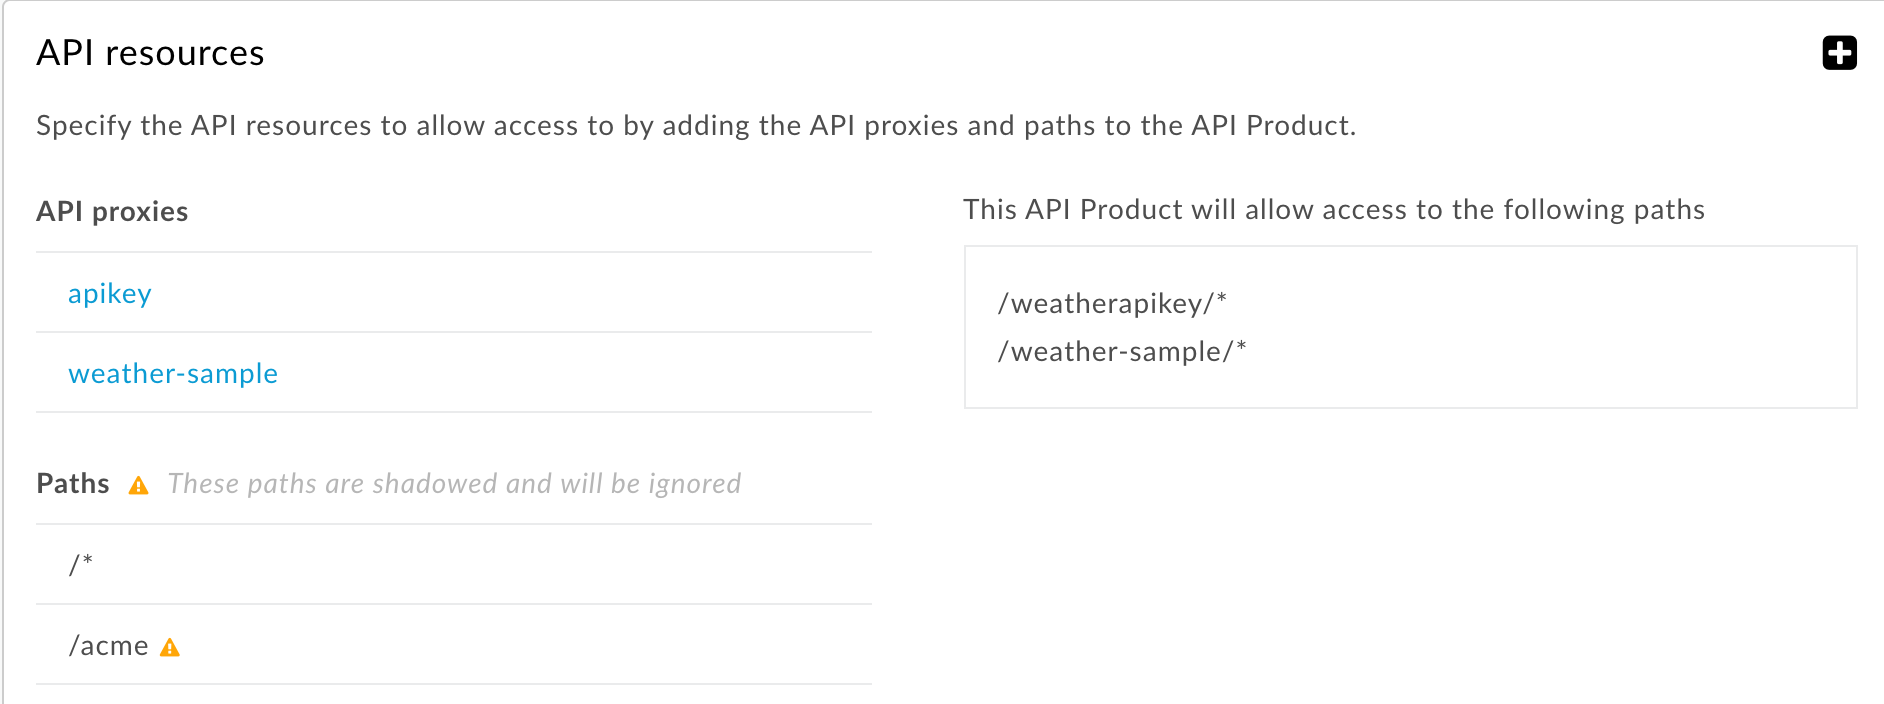 모든 API 프록시에 적용되는 리소스 경로와 더 구체적인 리소스 경로는 무시됩니다.